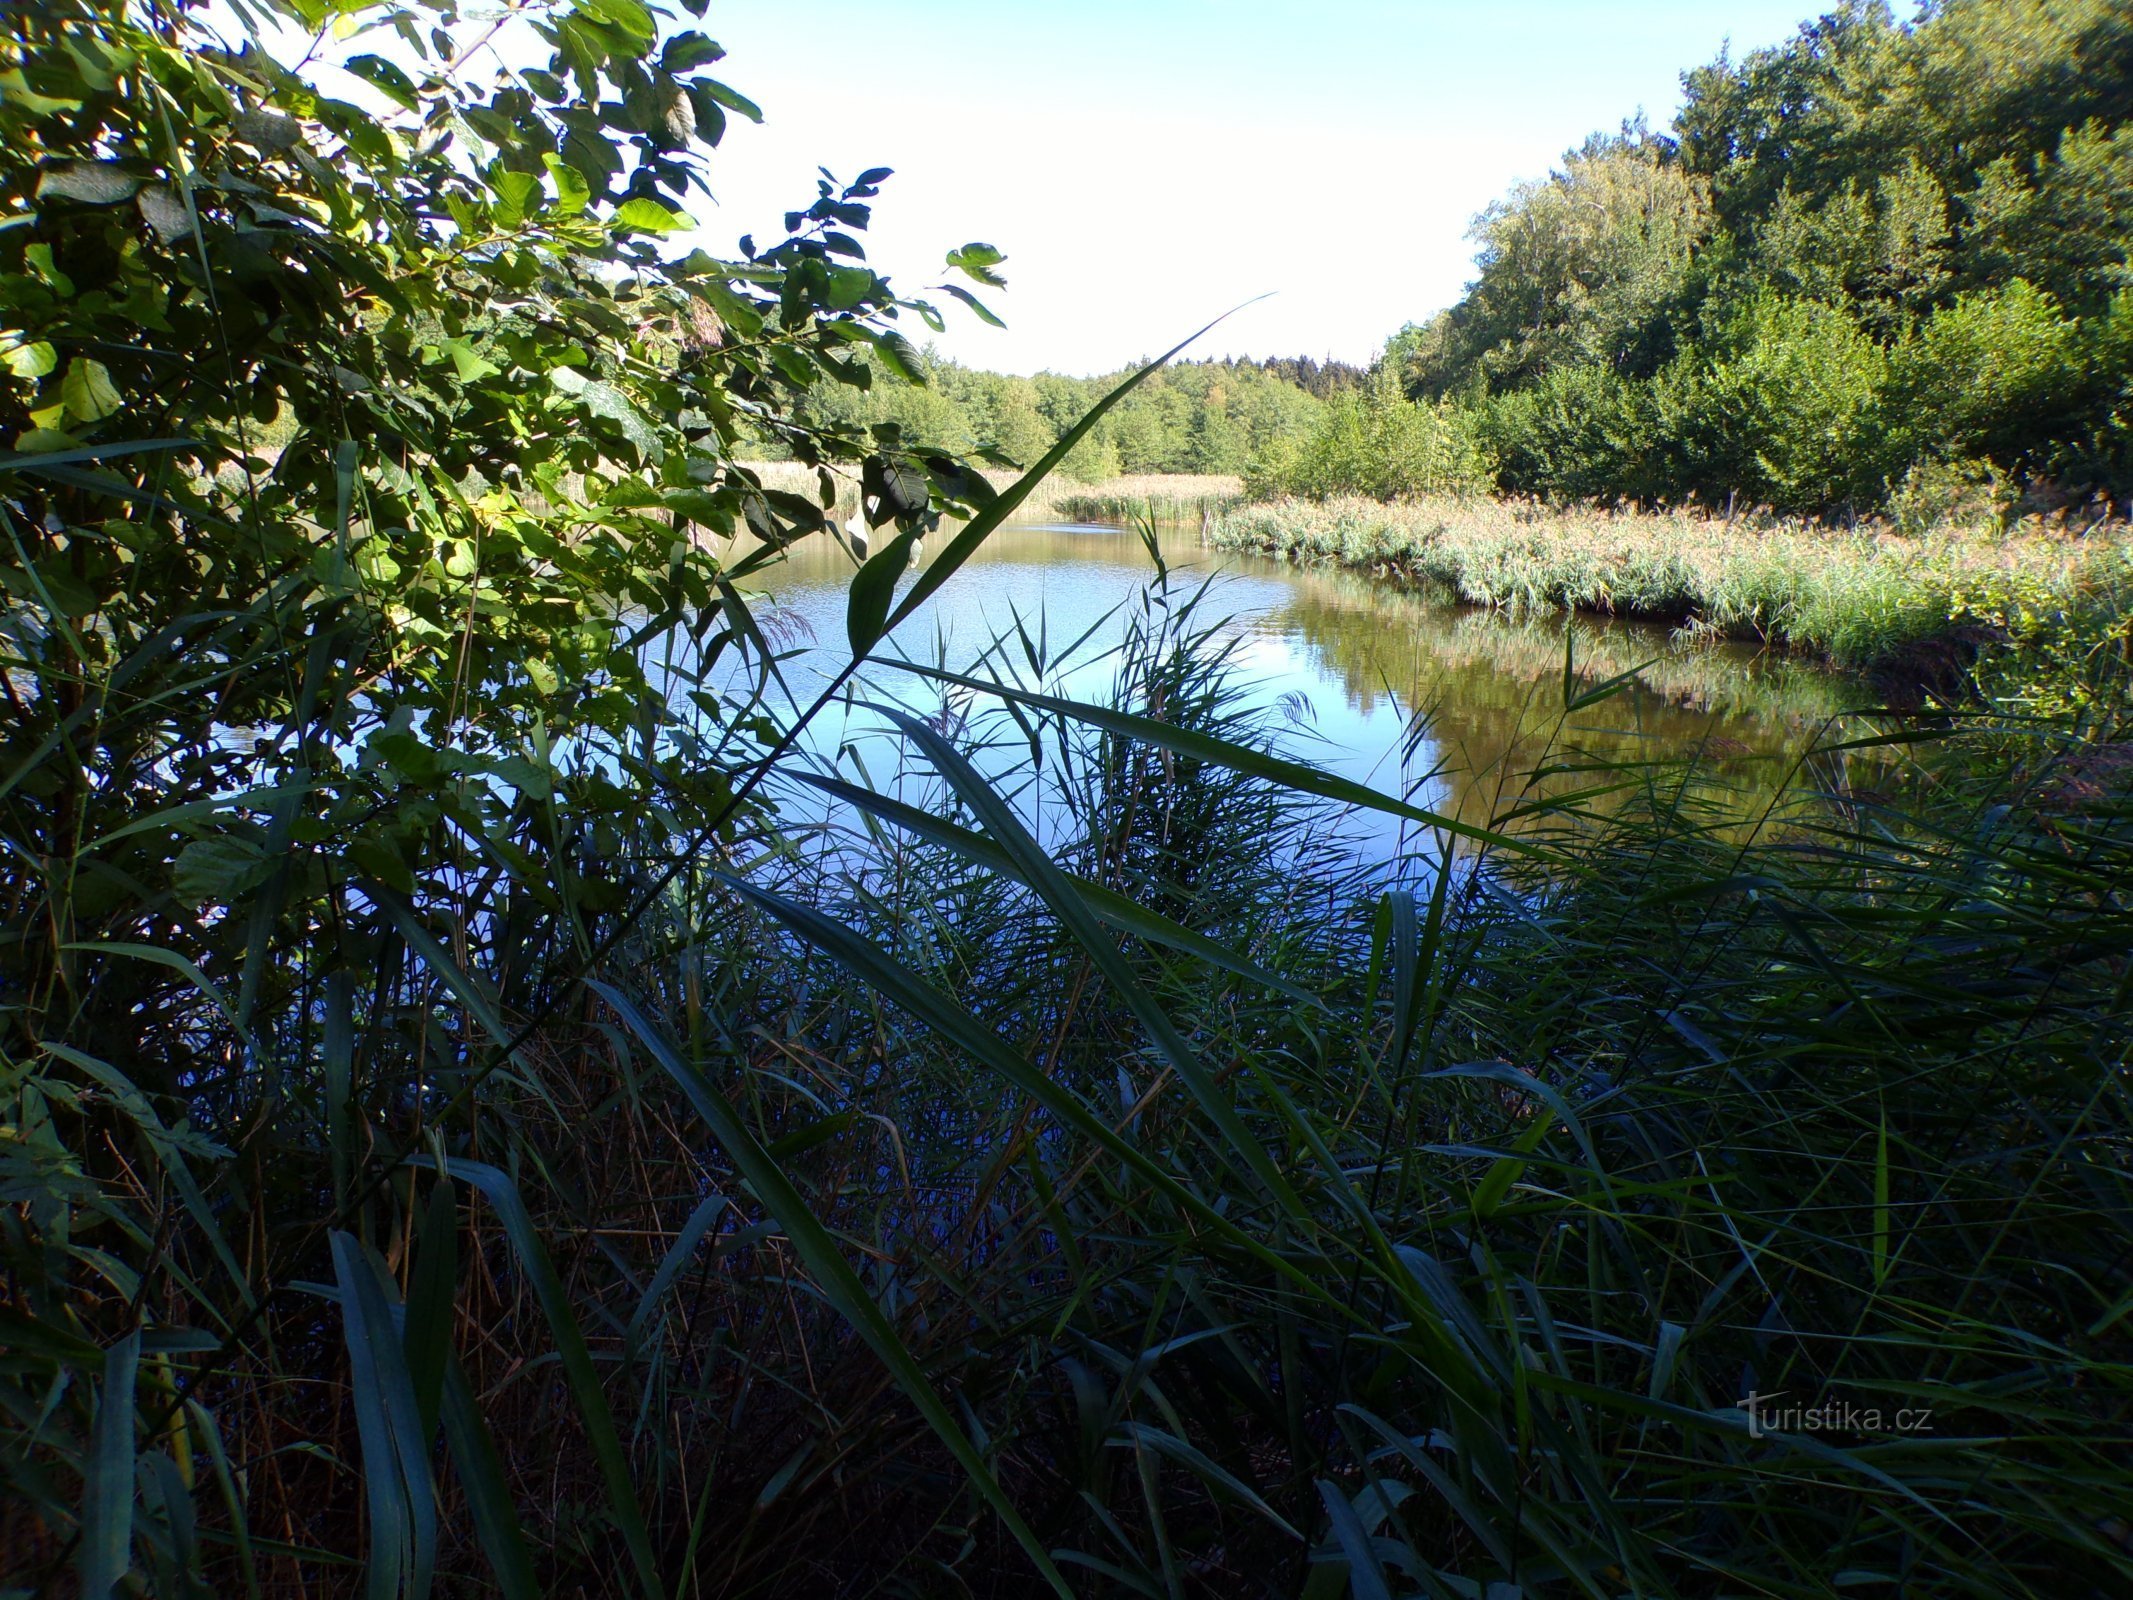 Hlinský rybník (Petrovice nad Orlicí, 1.9.2022. XNUMX. XNUMX)